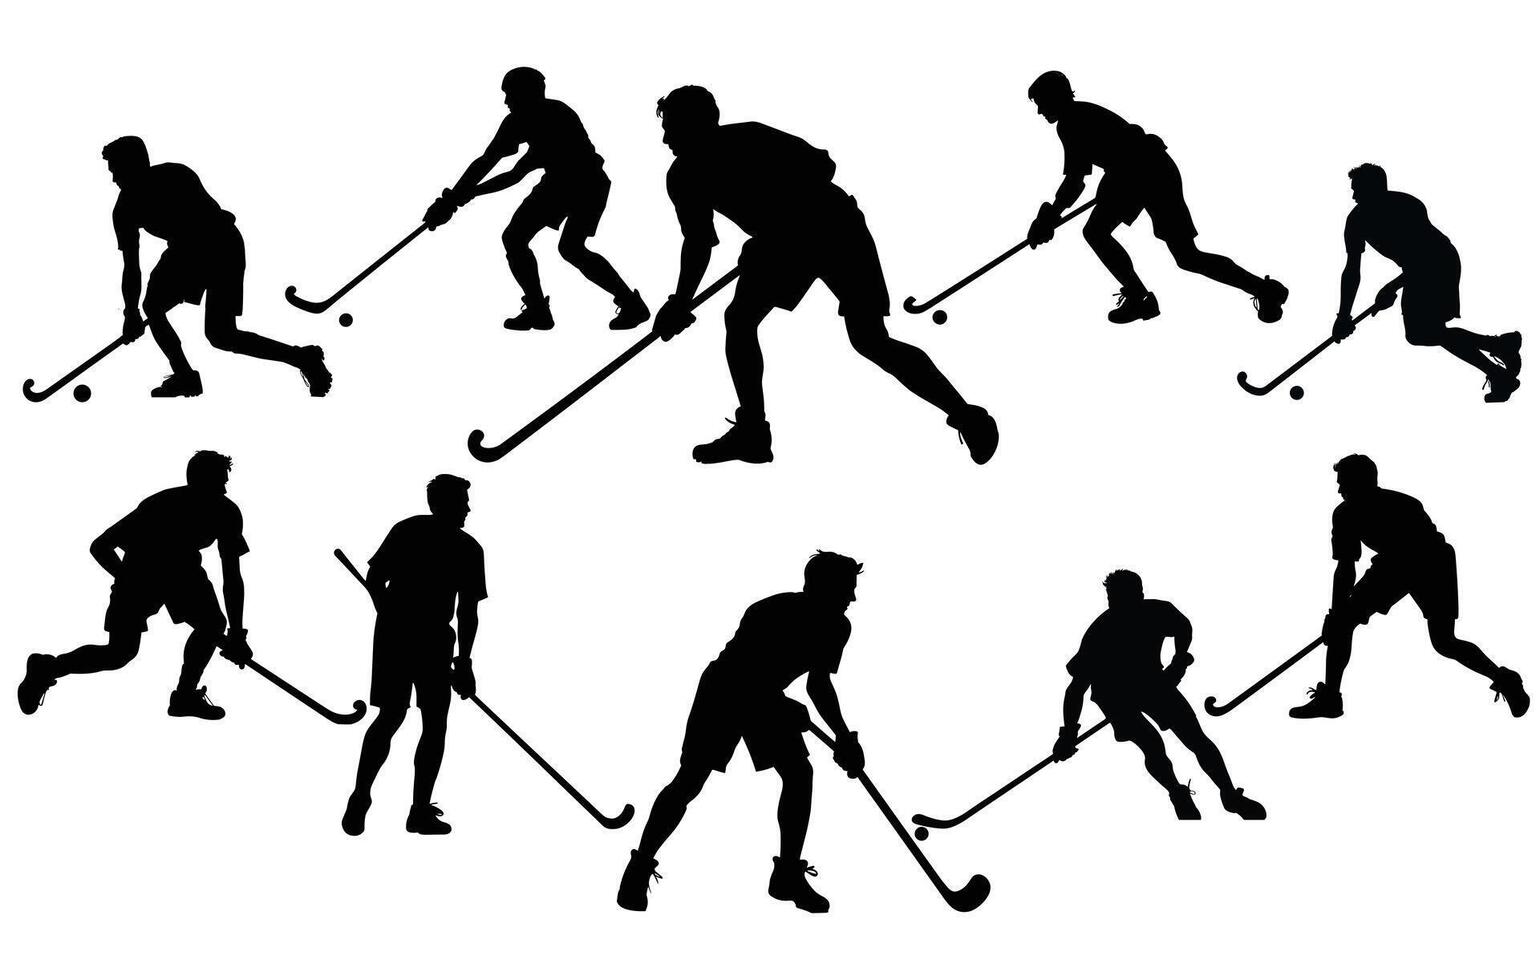 siluetas de campo hockey vector,hockey jugadores vector